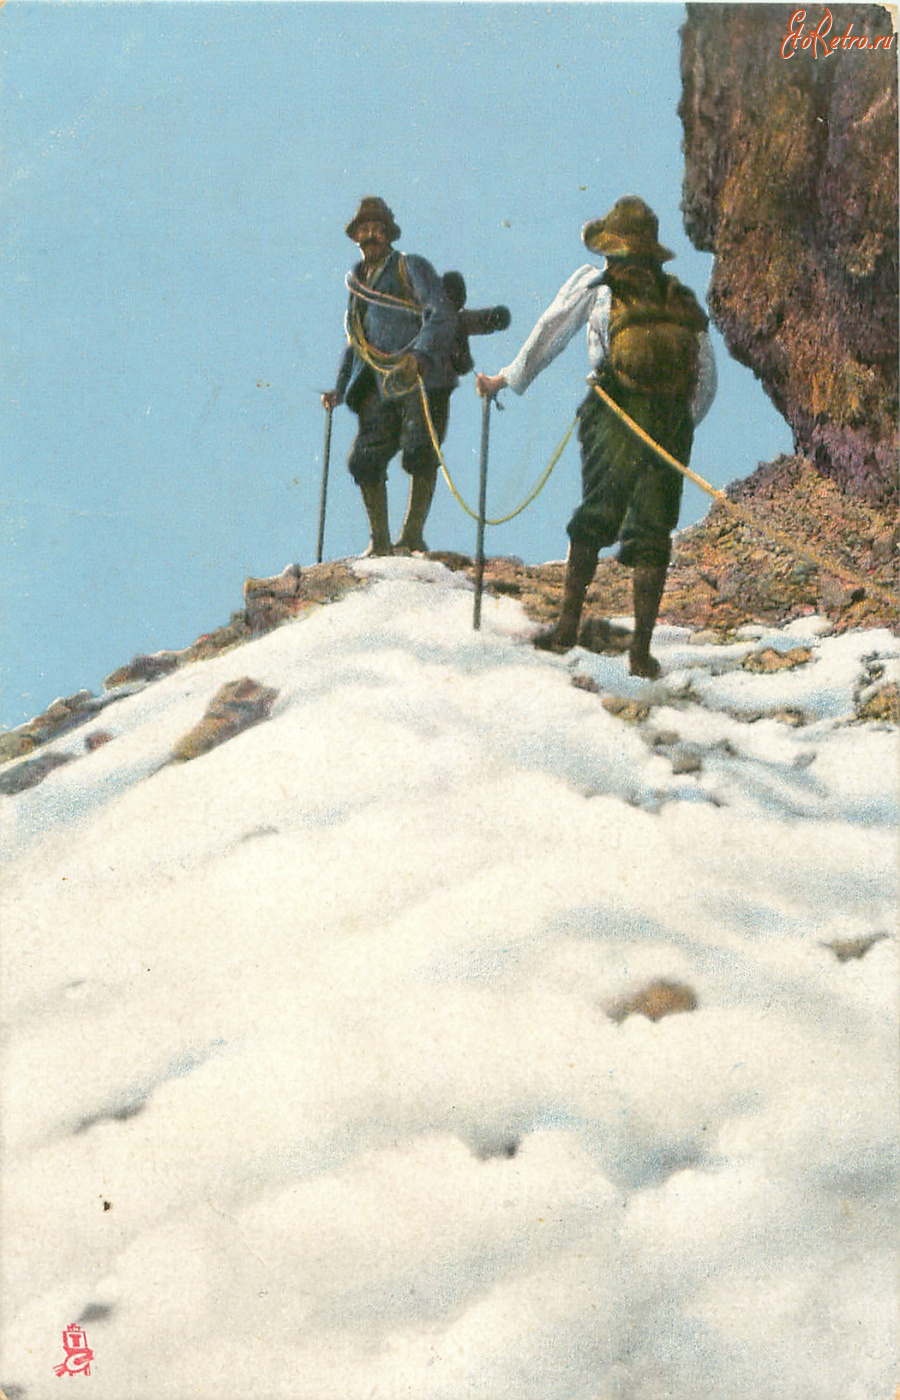 Ретро открытки - Альпинисты на снежном склоне в Доломитах